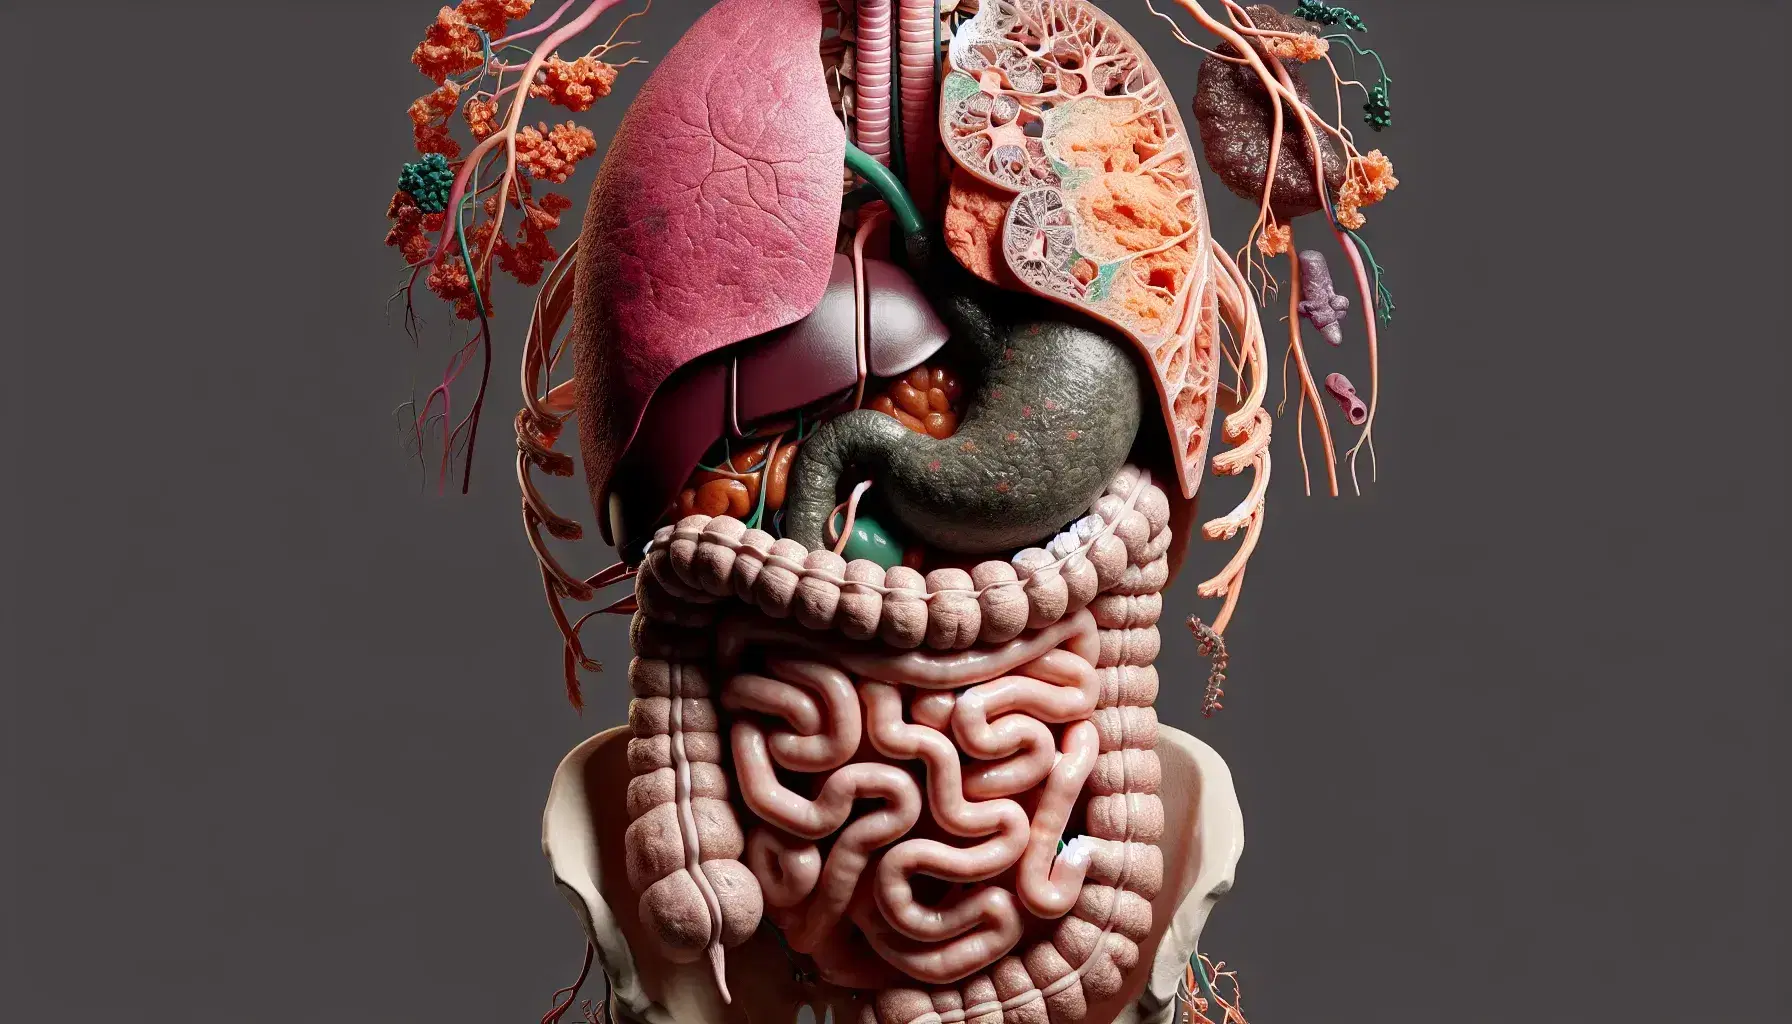 Ilustración detallada del sistema digestivo humano mostrando esófago, estómago, hígado, vesícula biliar, páncreas e intestinos grueso y delgado sin piel en torso.